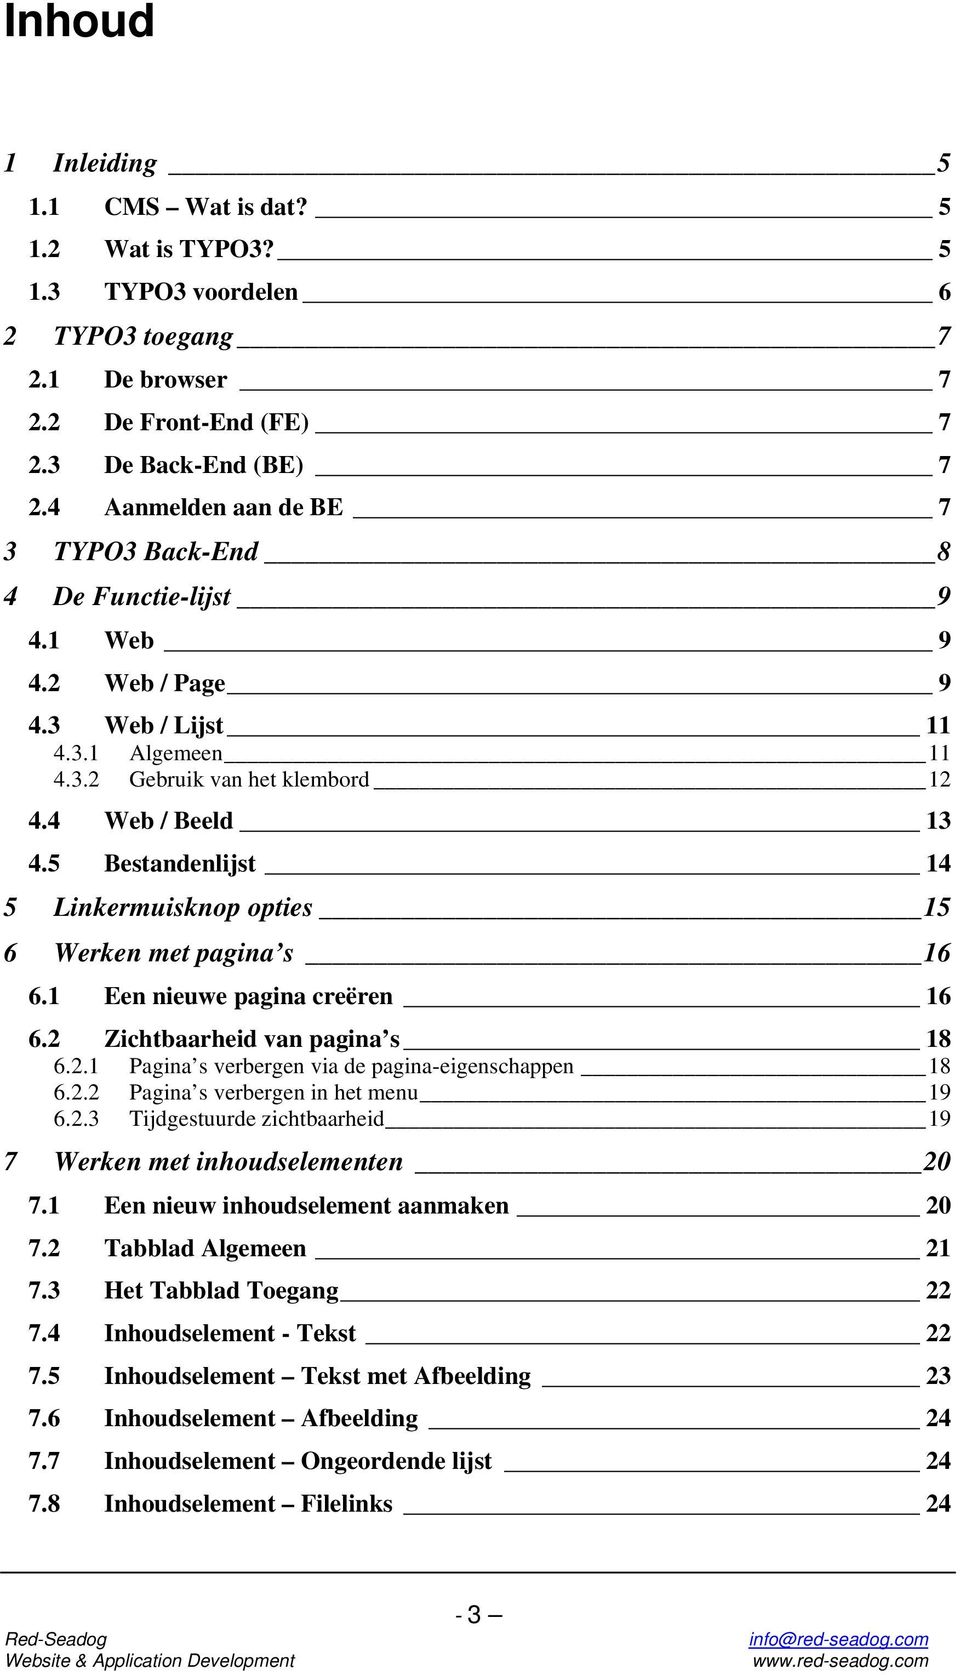 5 Bestandenlijst 14 5 Linkermuisknop opties 15 6 Werken met pagina s 16 6.1 Een nieuwe pagina creëren 16 6.2 Zichtbaarheid van pagina s 18 6.2.1 Pagina s verbergen via de pagina-eigenschappen 18 6.2.2 Pagina s verbergen in het menu 19 6.